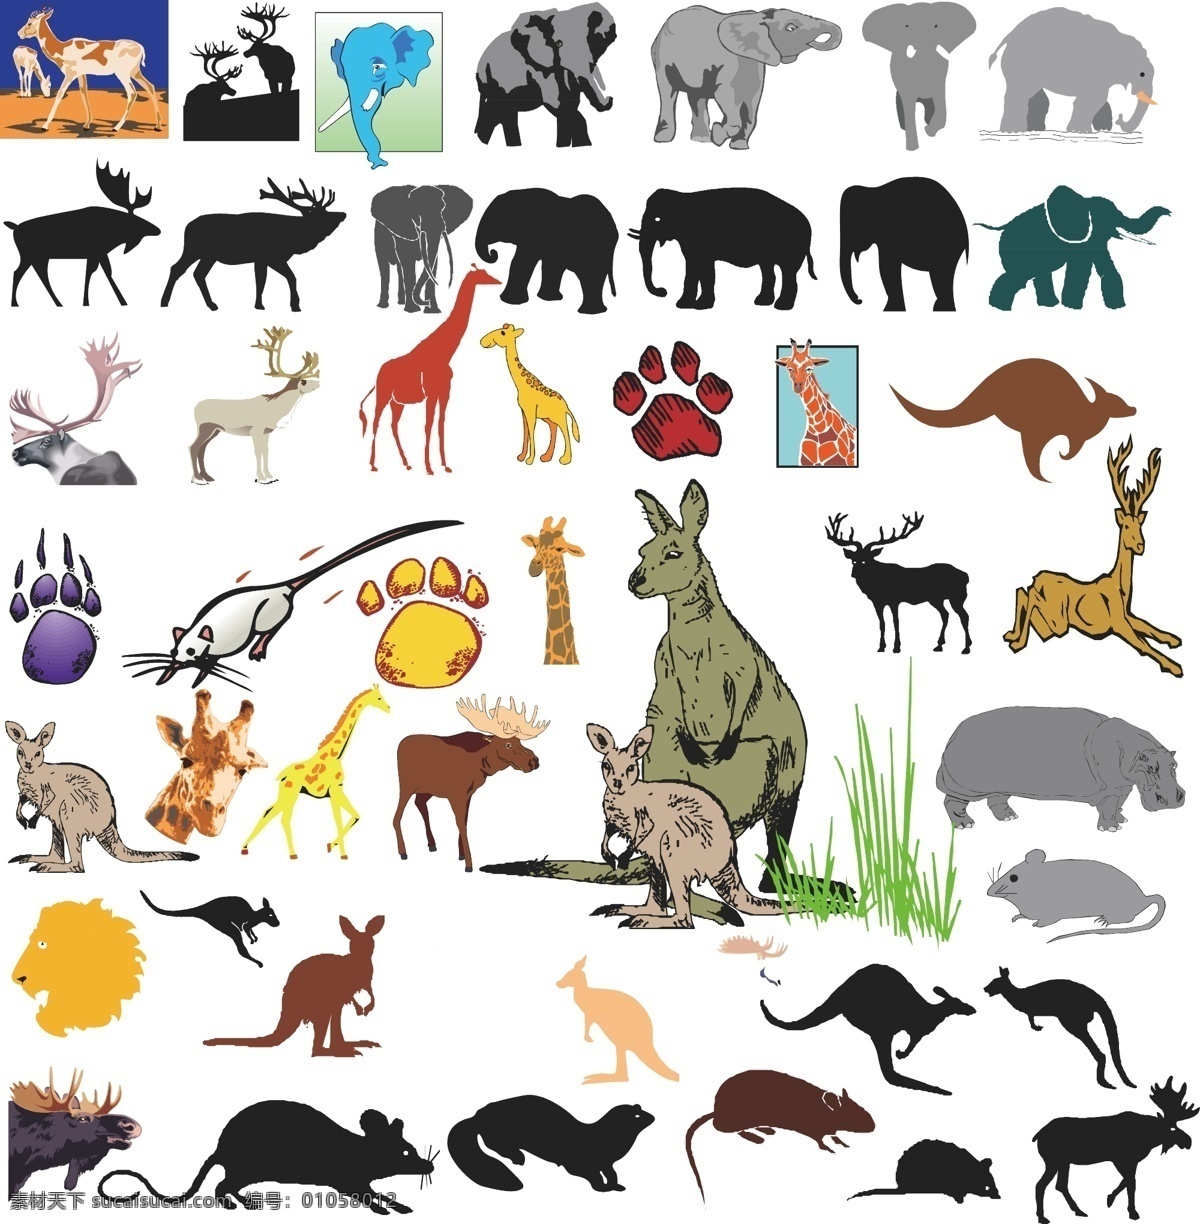 大象 袋鼠 麋鹿 动物 乐园 剪影 脚印 长颈鹿 动物图形元素 野生动物 生物世界 矢量